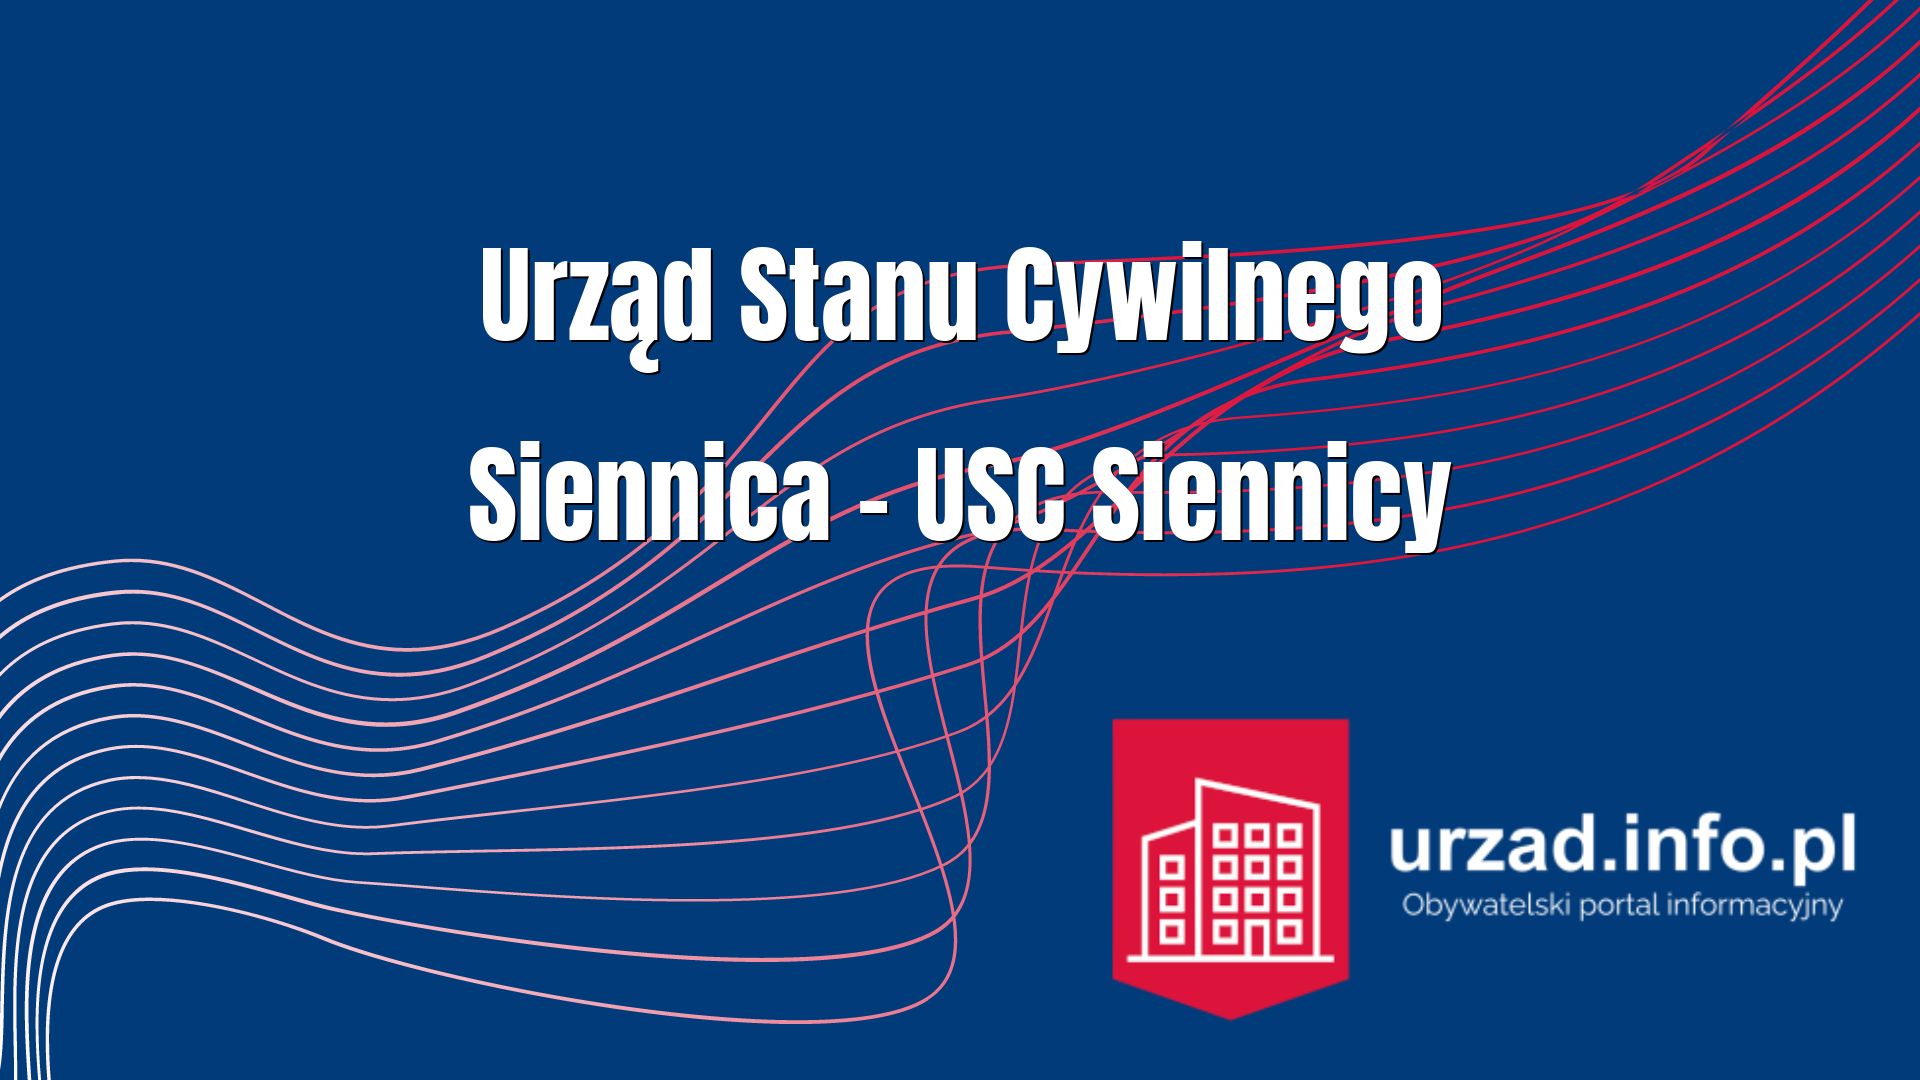 Urząd Stanu Cywilnego Siennica – USC Siennicy